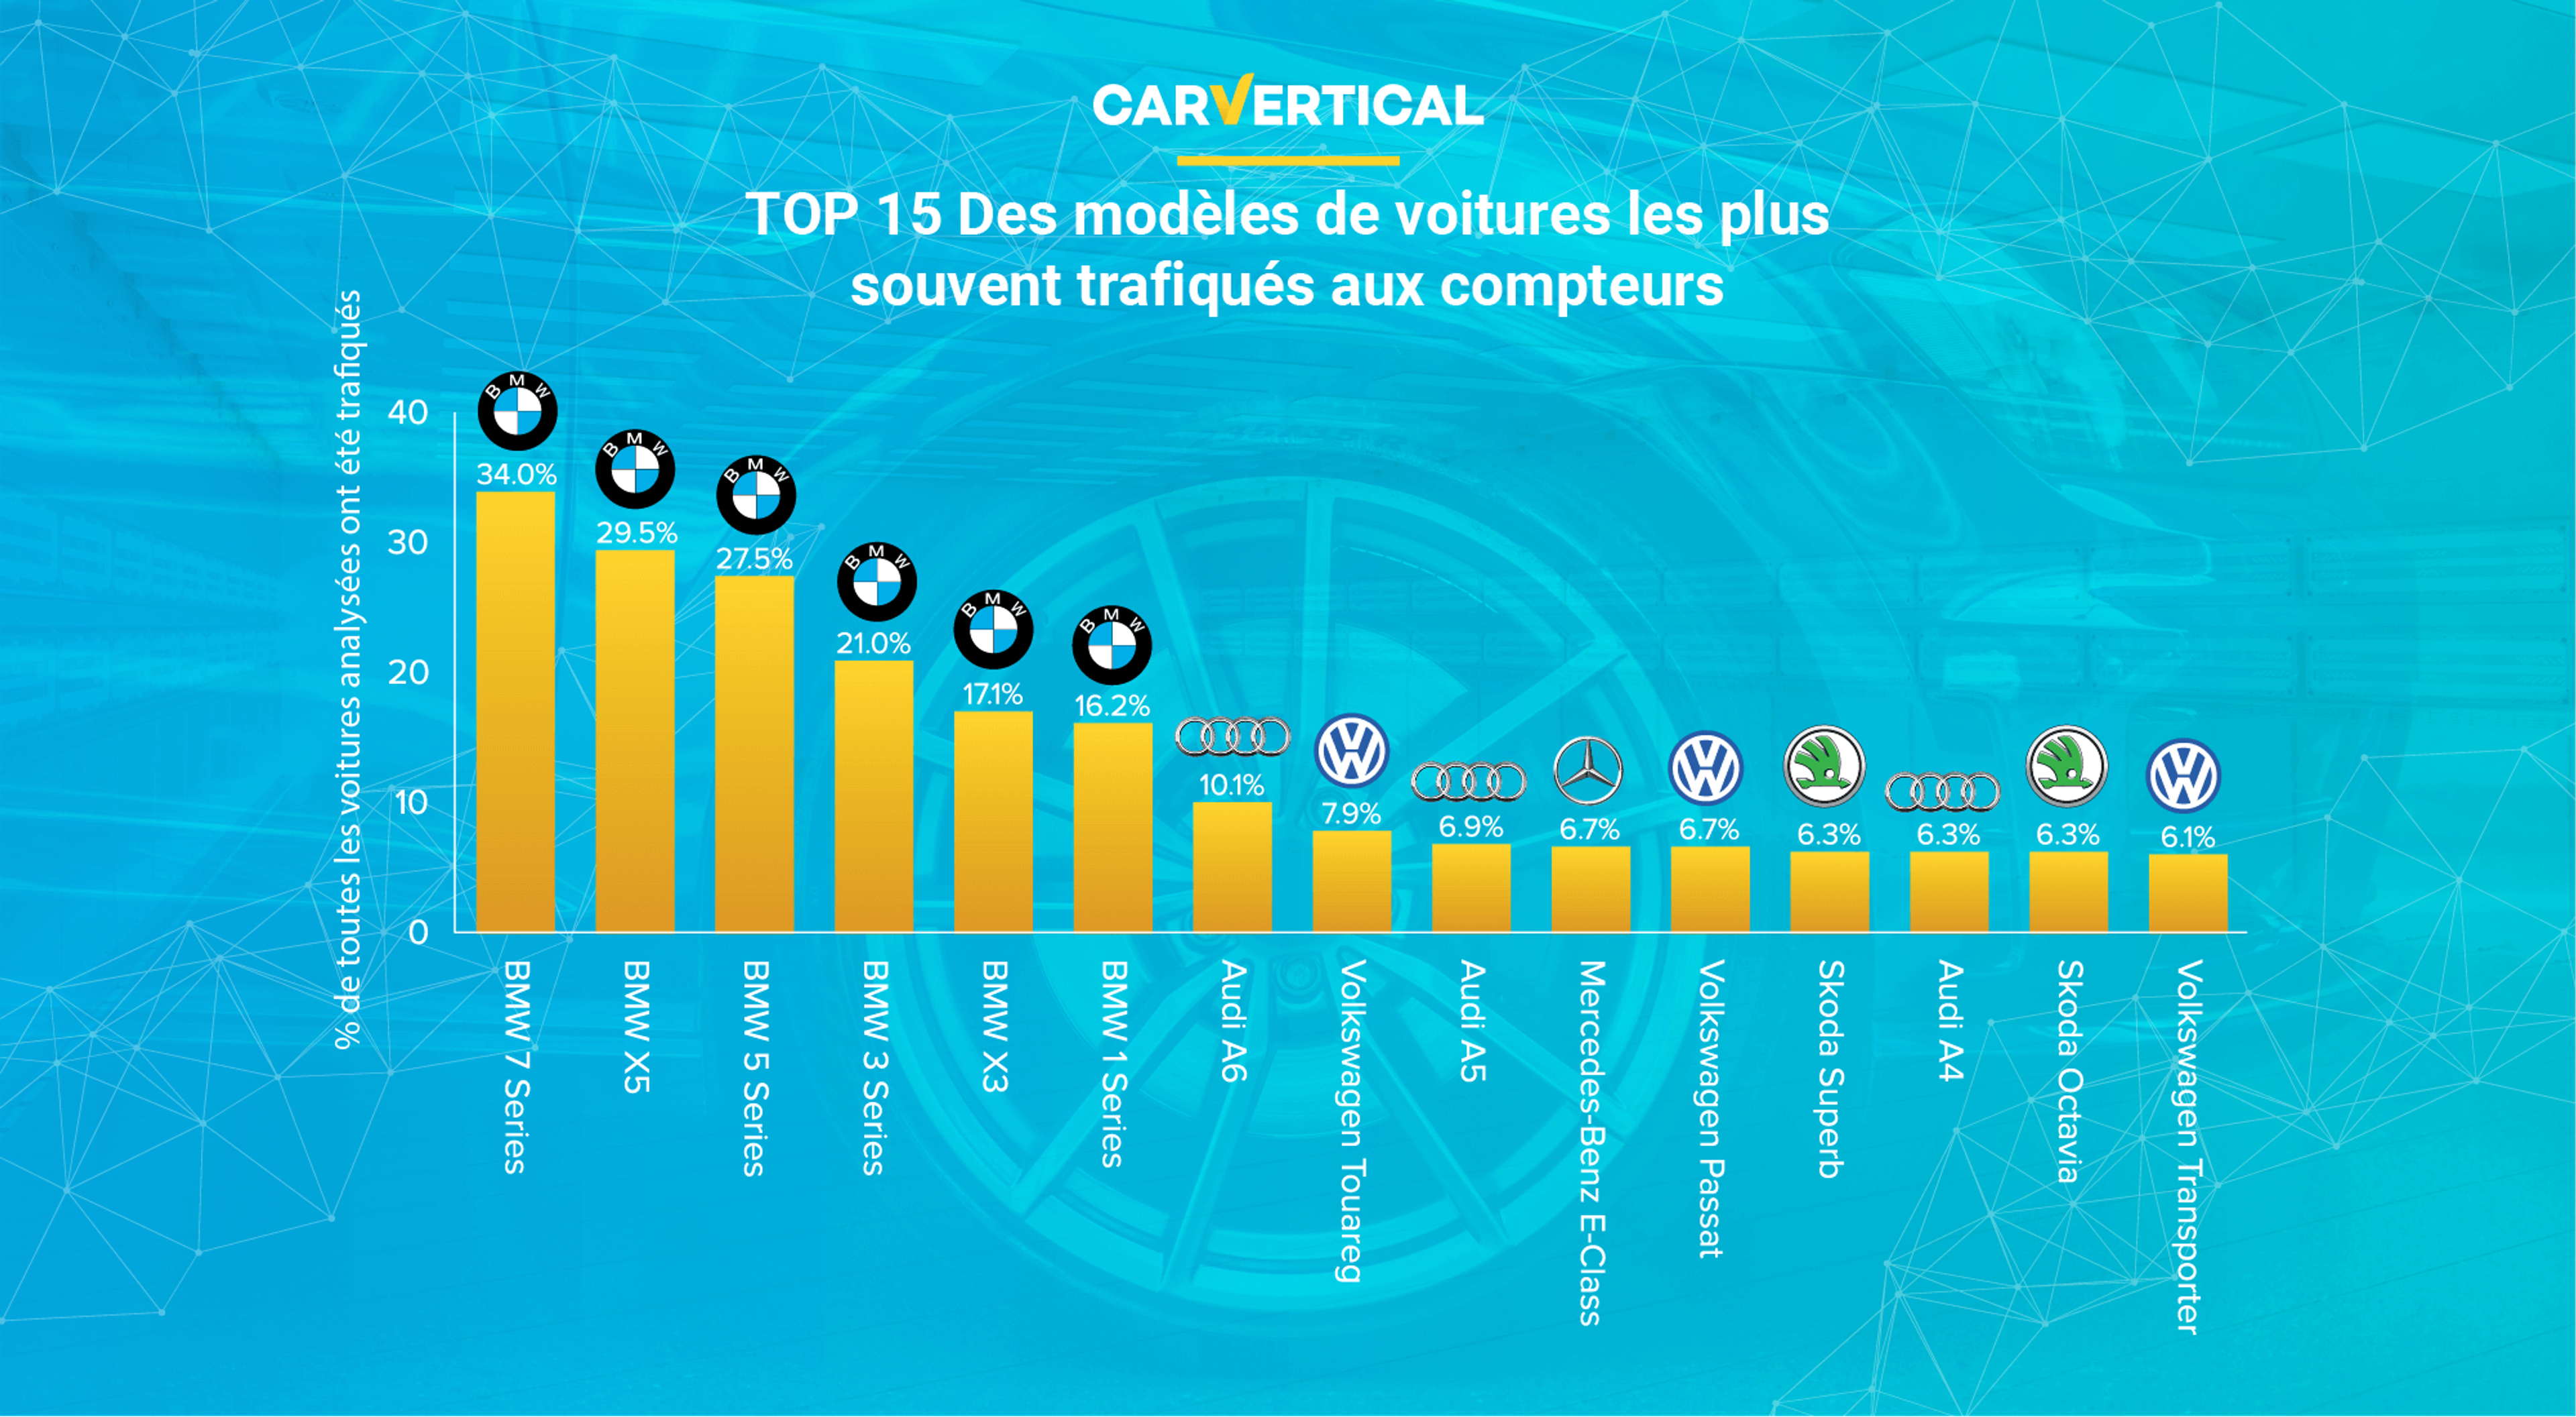 Le TOP 15 des modèles de voitures aux compteurs les plus trafiqués aux computeurs